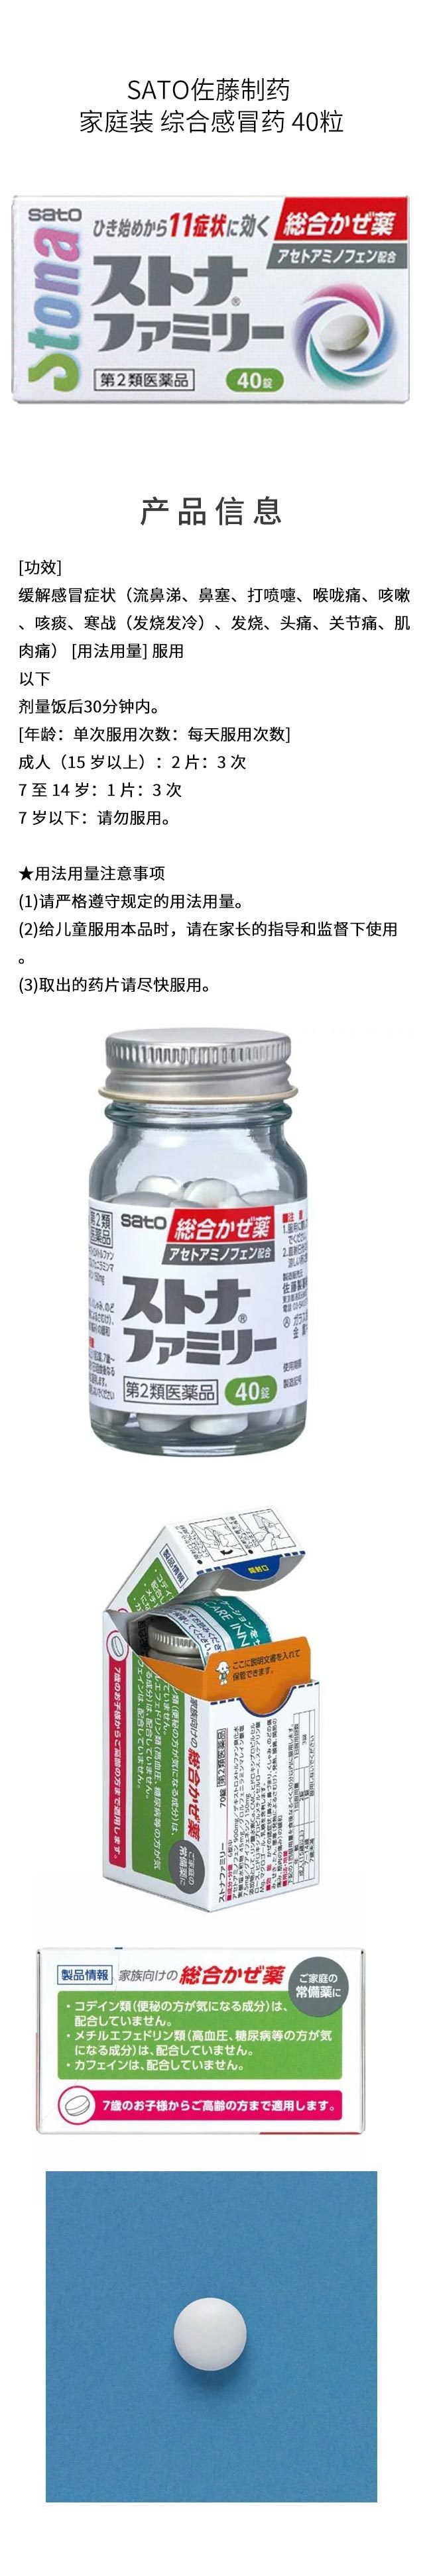 【日本直邮】SATO佐藤制药 家庭装 综合感冒药 40粒